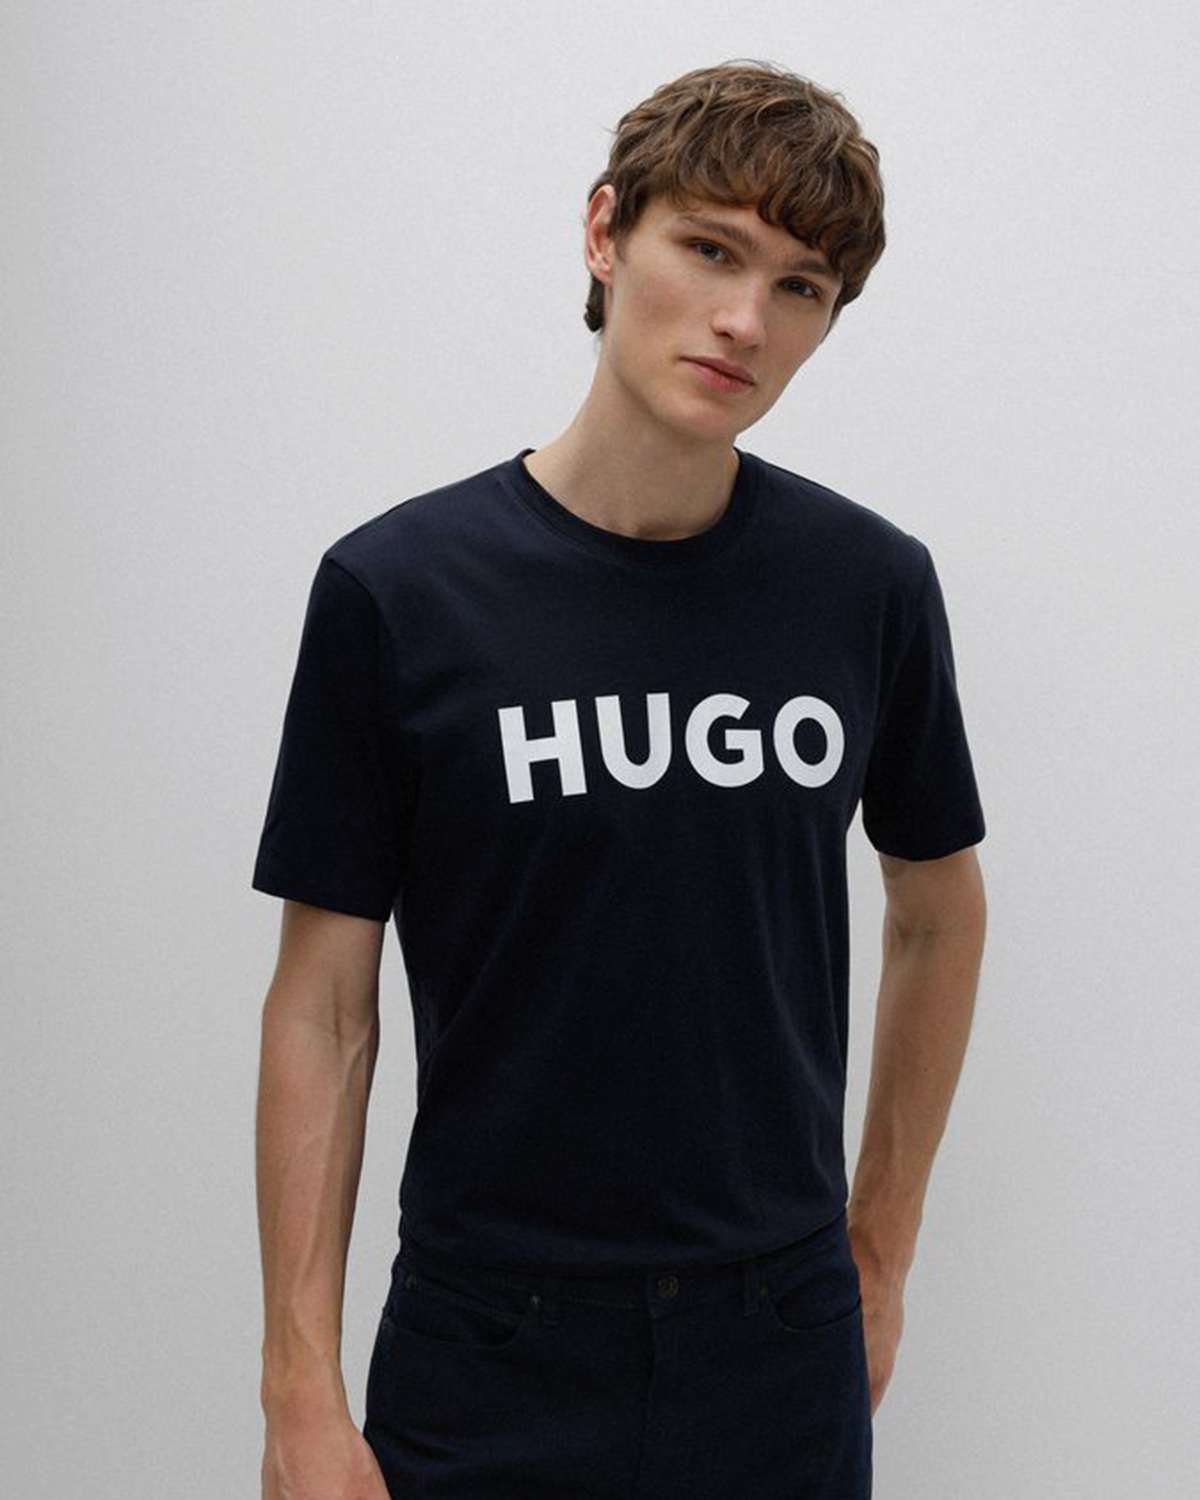 Футболка Hugo. Футболка Hugo Dulivio. Hugo футболка мужская. Hugo футболка коричневая. Hugo размеры